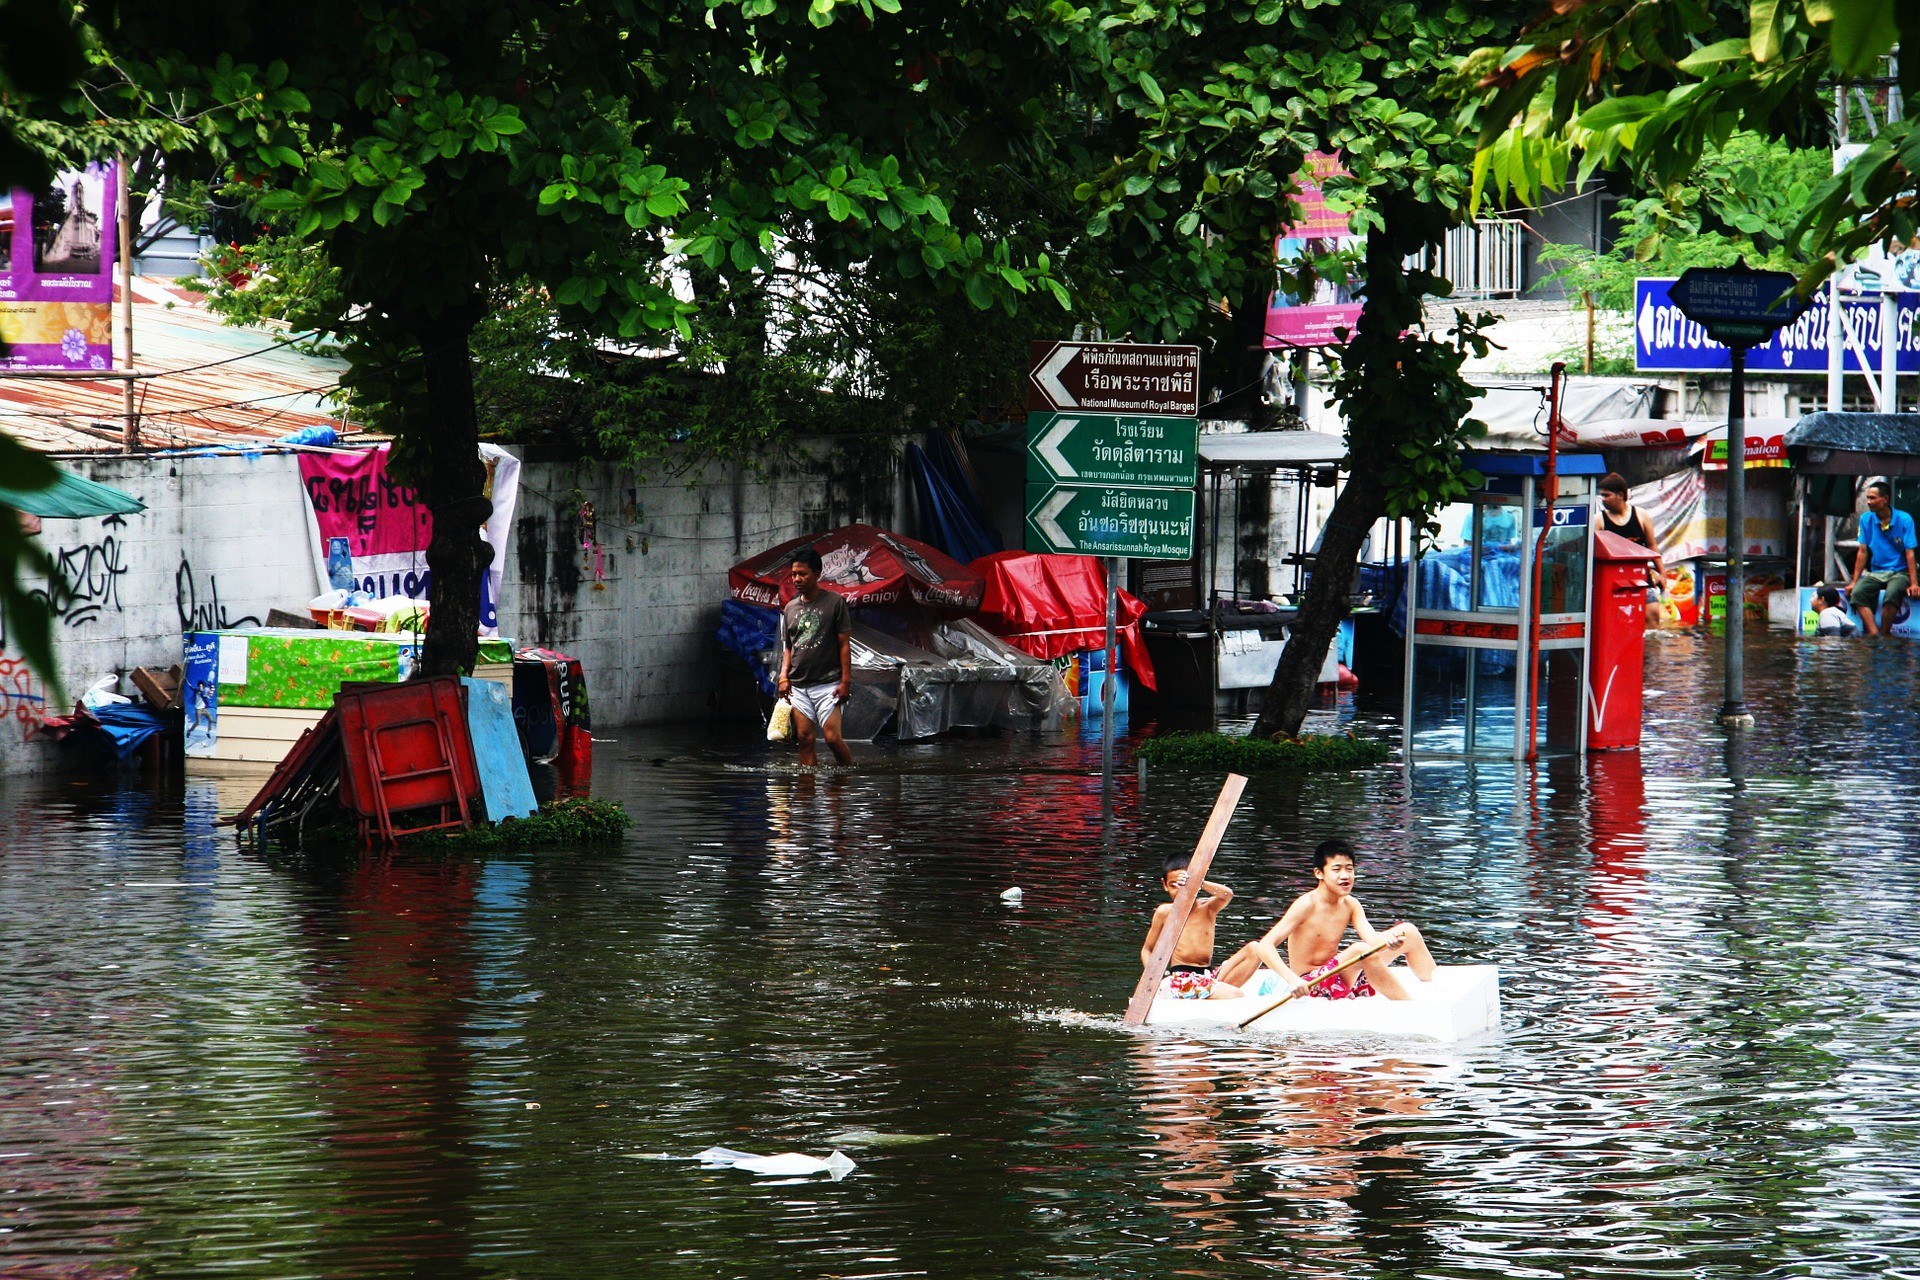 Enchentes devem ser cada vez mais comuns. (Foto: Creative Commons / terimakasih0)